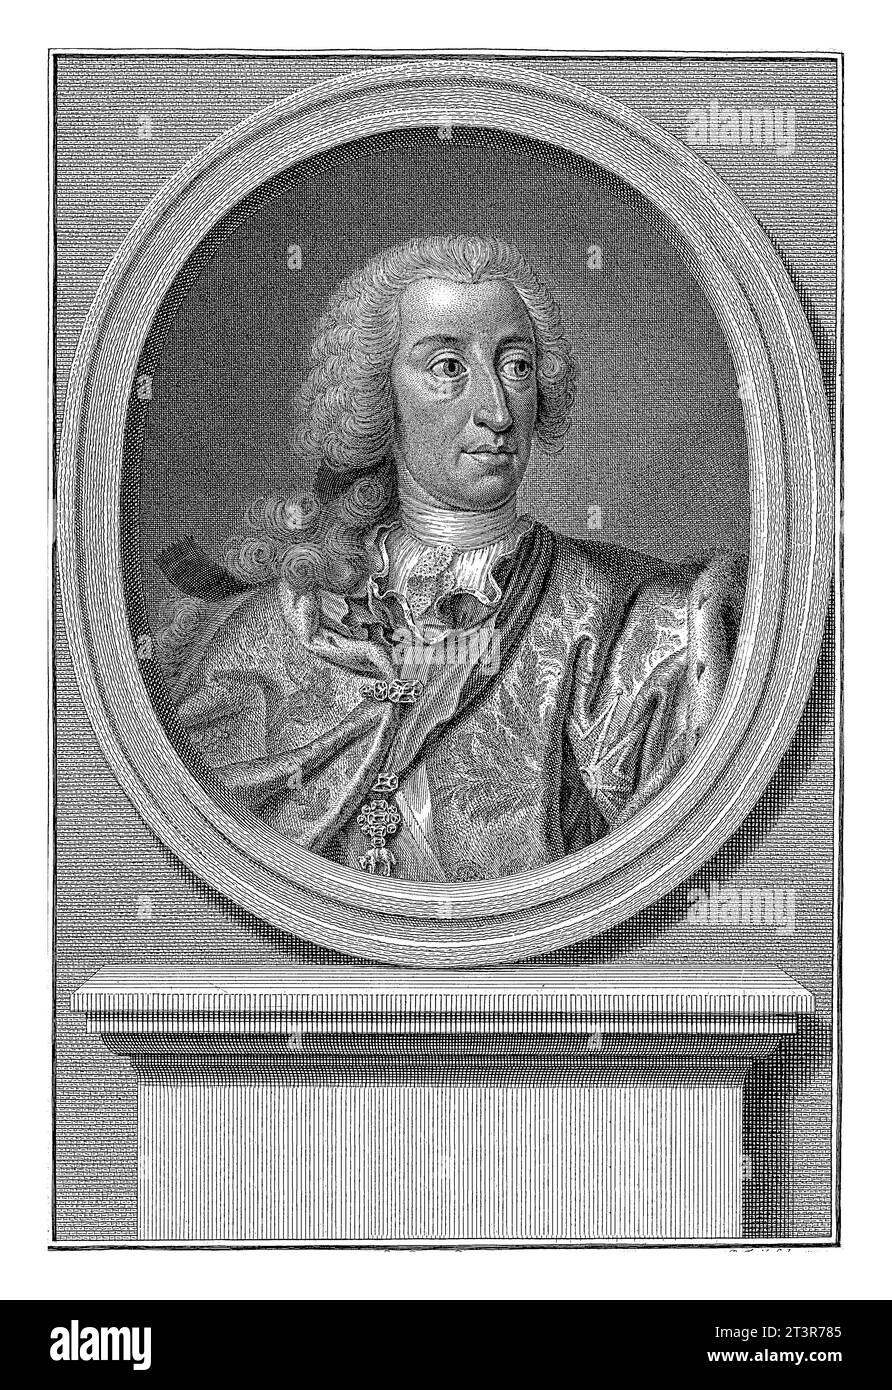 Ritratto dell'imperatore tedesco Carlo VII Alberto, Pieter Tanje, dopo Georg Desmarees, 1752 Ritratto di Carlo VII Alberto, imperatore tedesco. Foto Stock